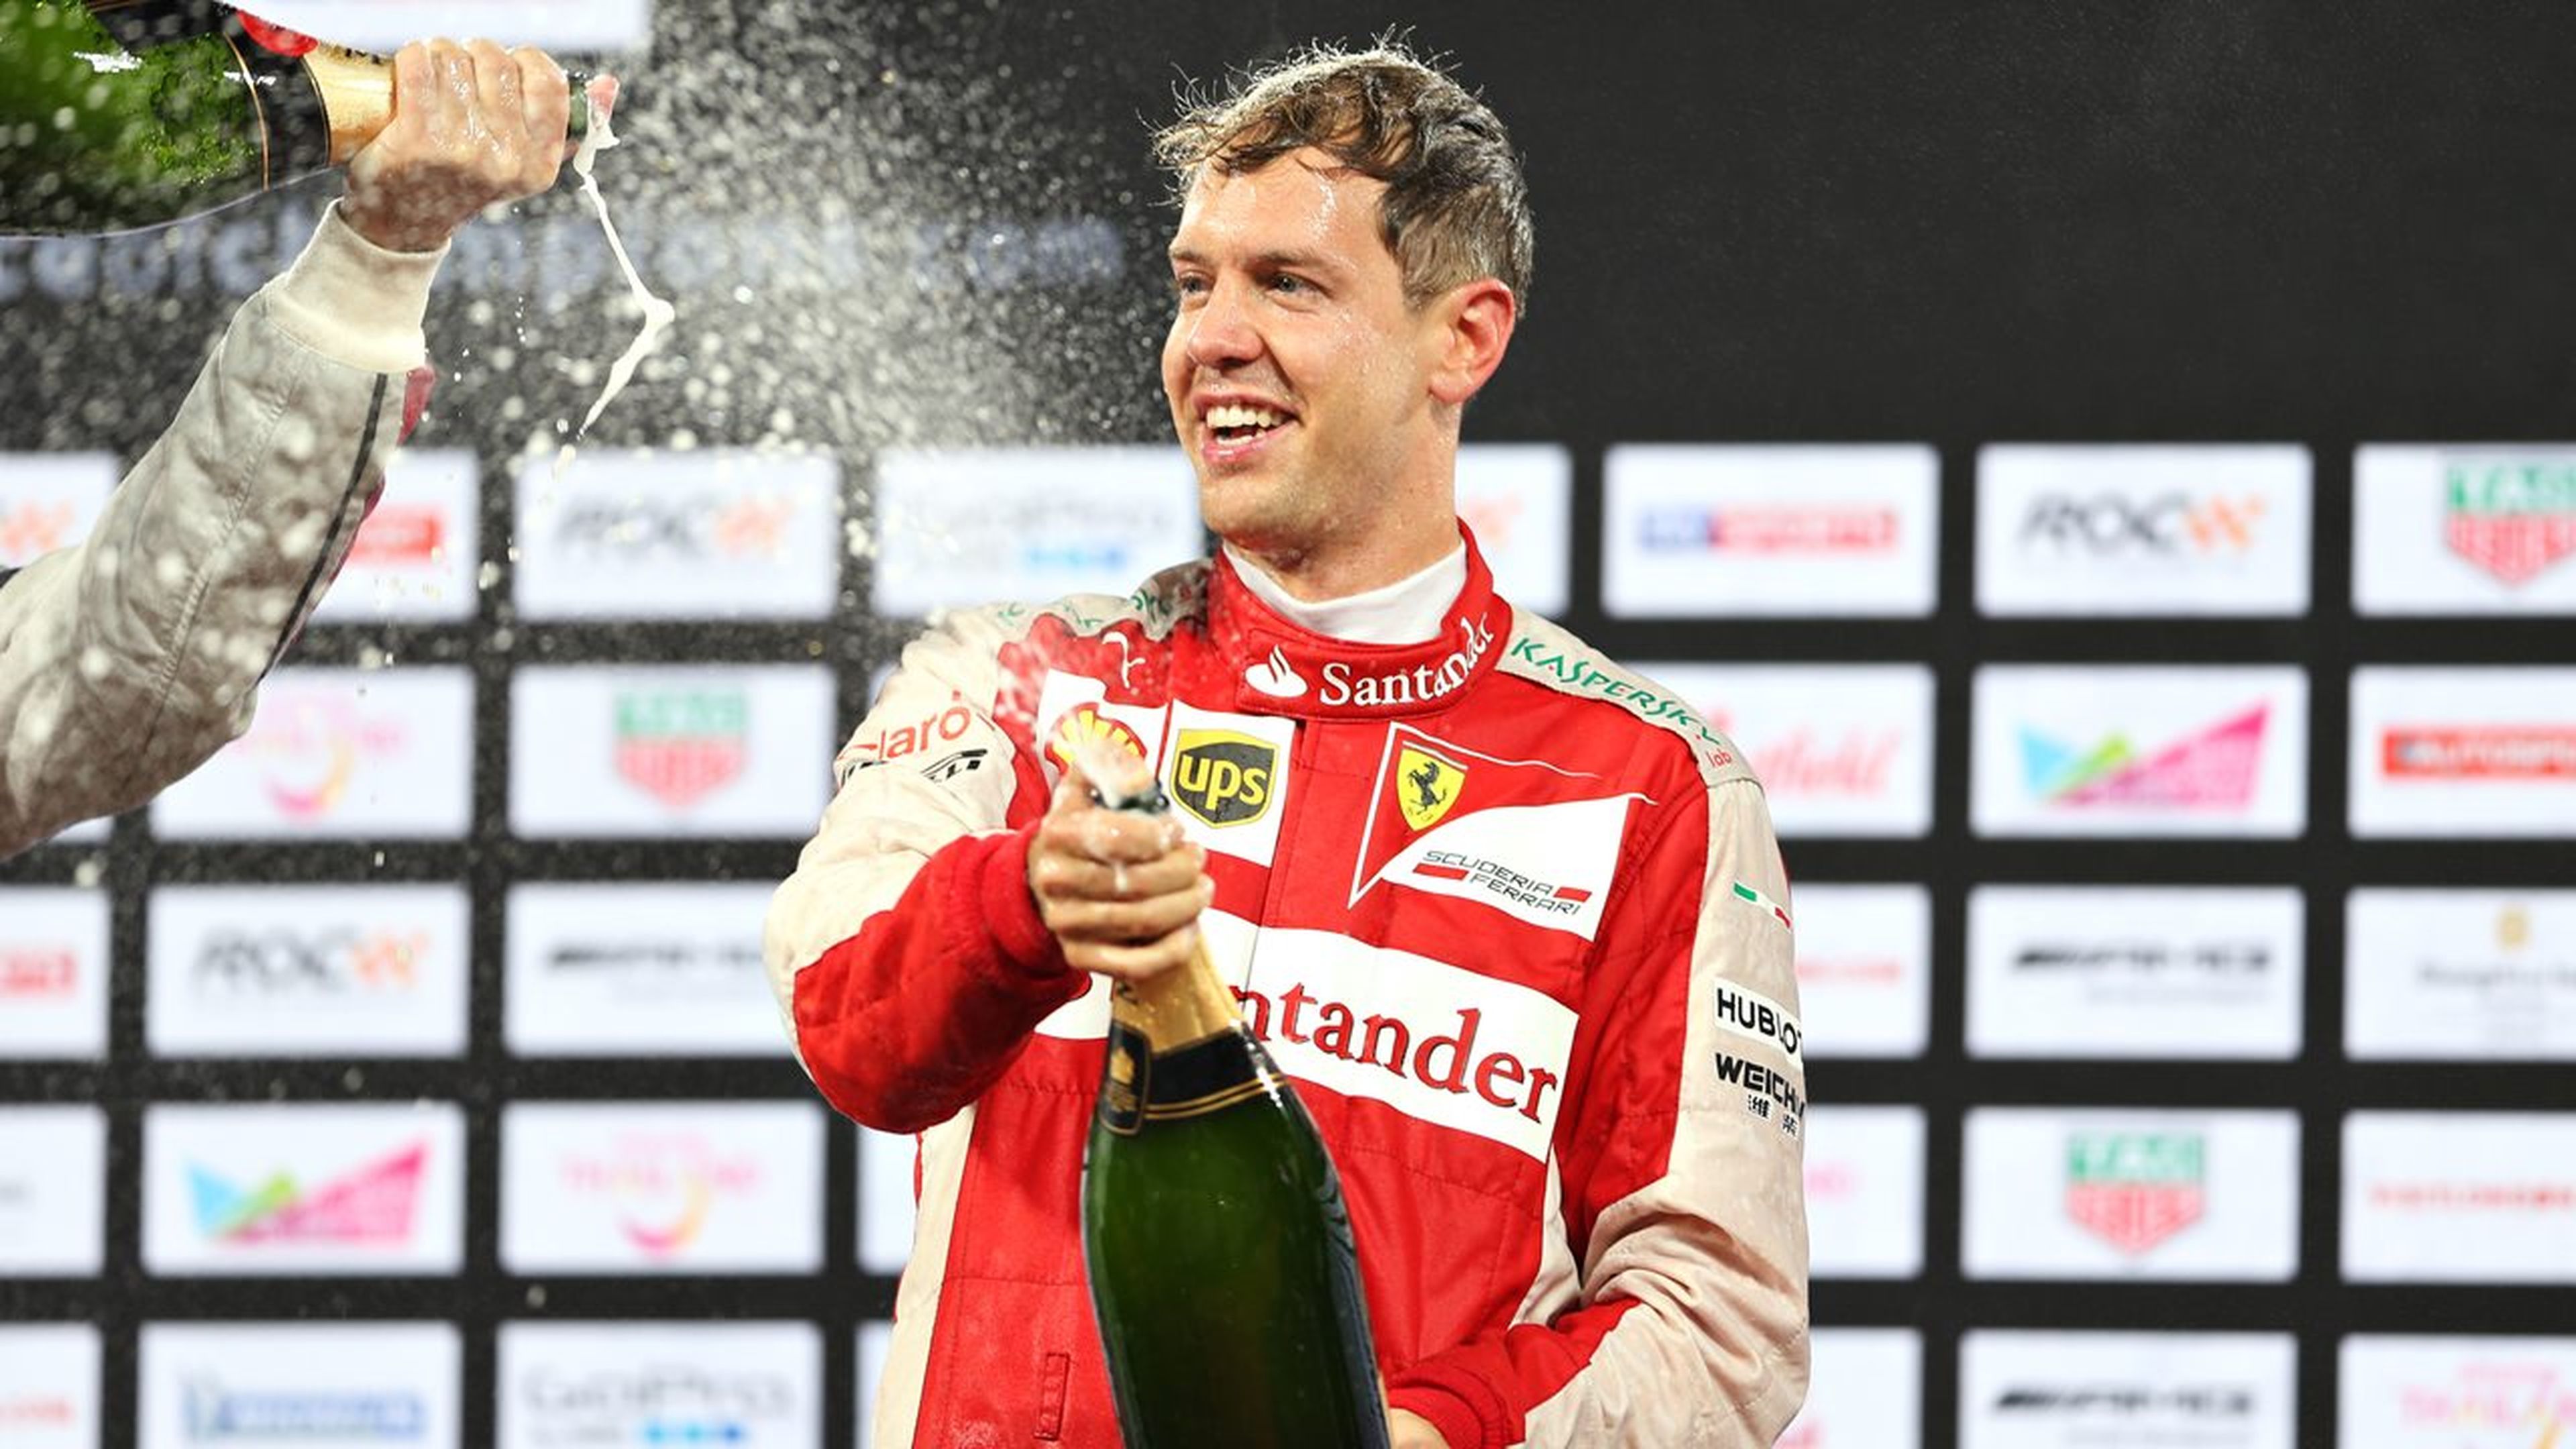 El plan de Vettel para ganar en 2018